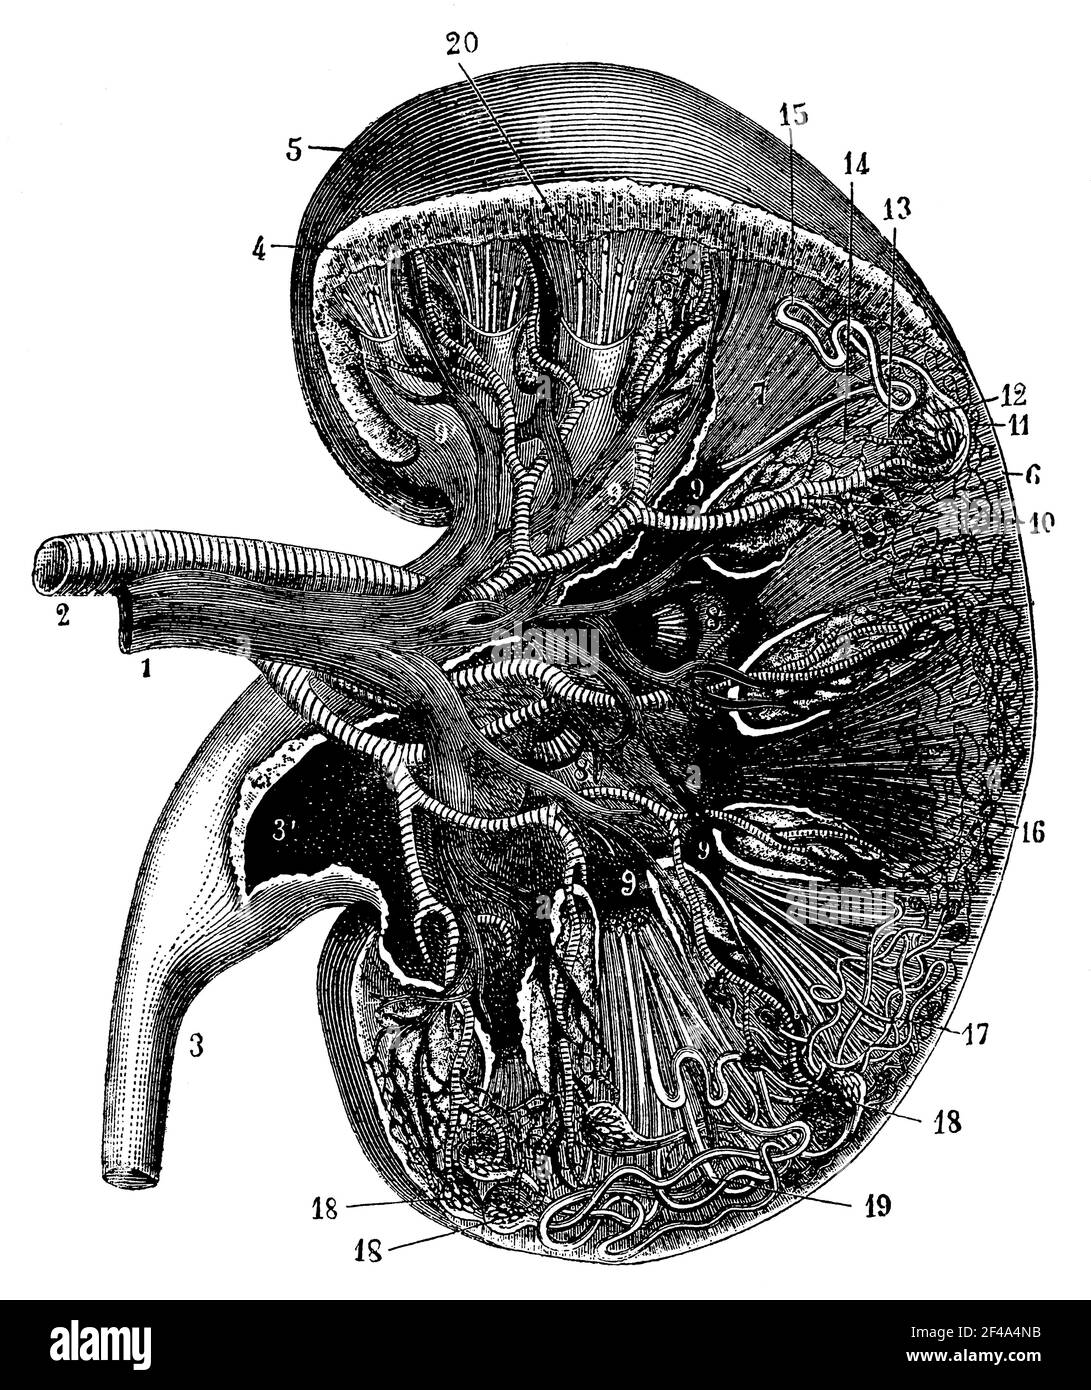 Querschnitt einer Niere. Illustration des 19th. Jahrhunderts. Deutschland. Weißer Hintergrund. Stockfoto